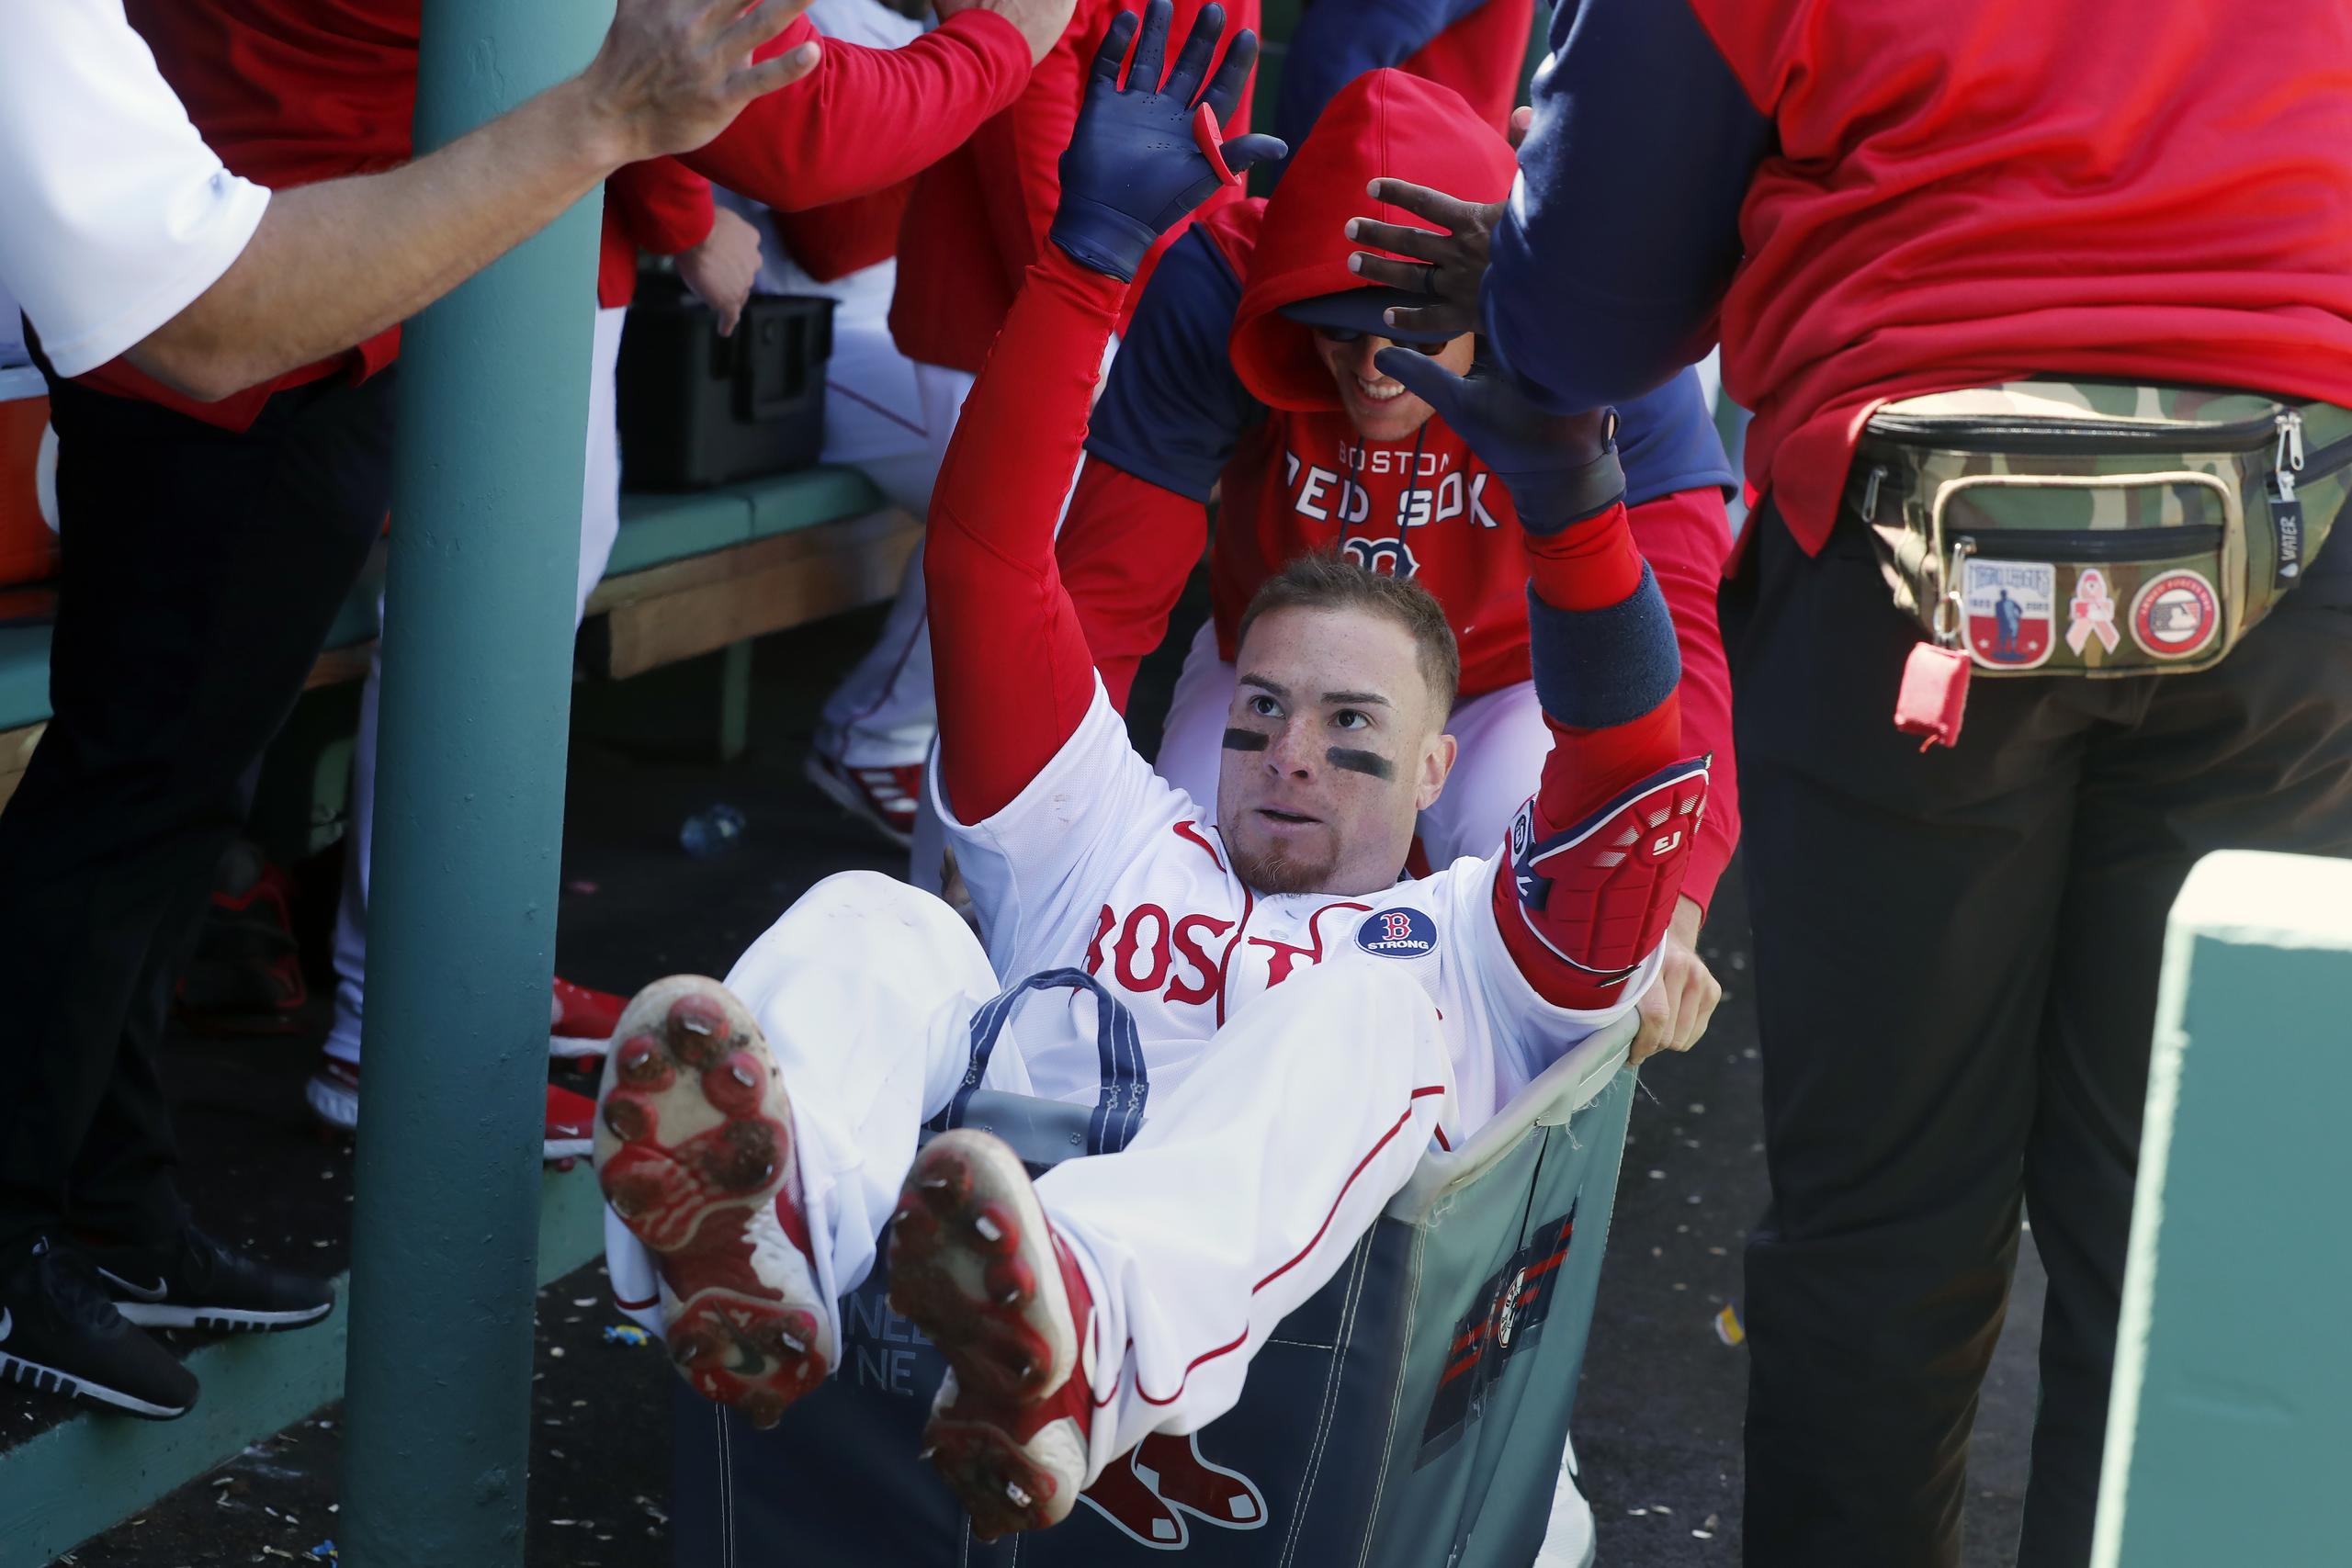 Tan reciente como ayer, Christian Vázquez conectó un jonrón y fue transportado en esa carretilla en el dugout de los Red Sox.